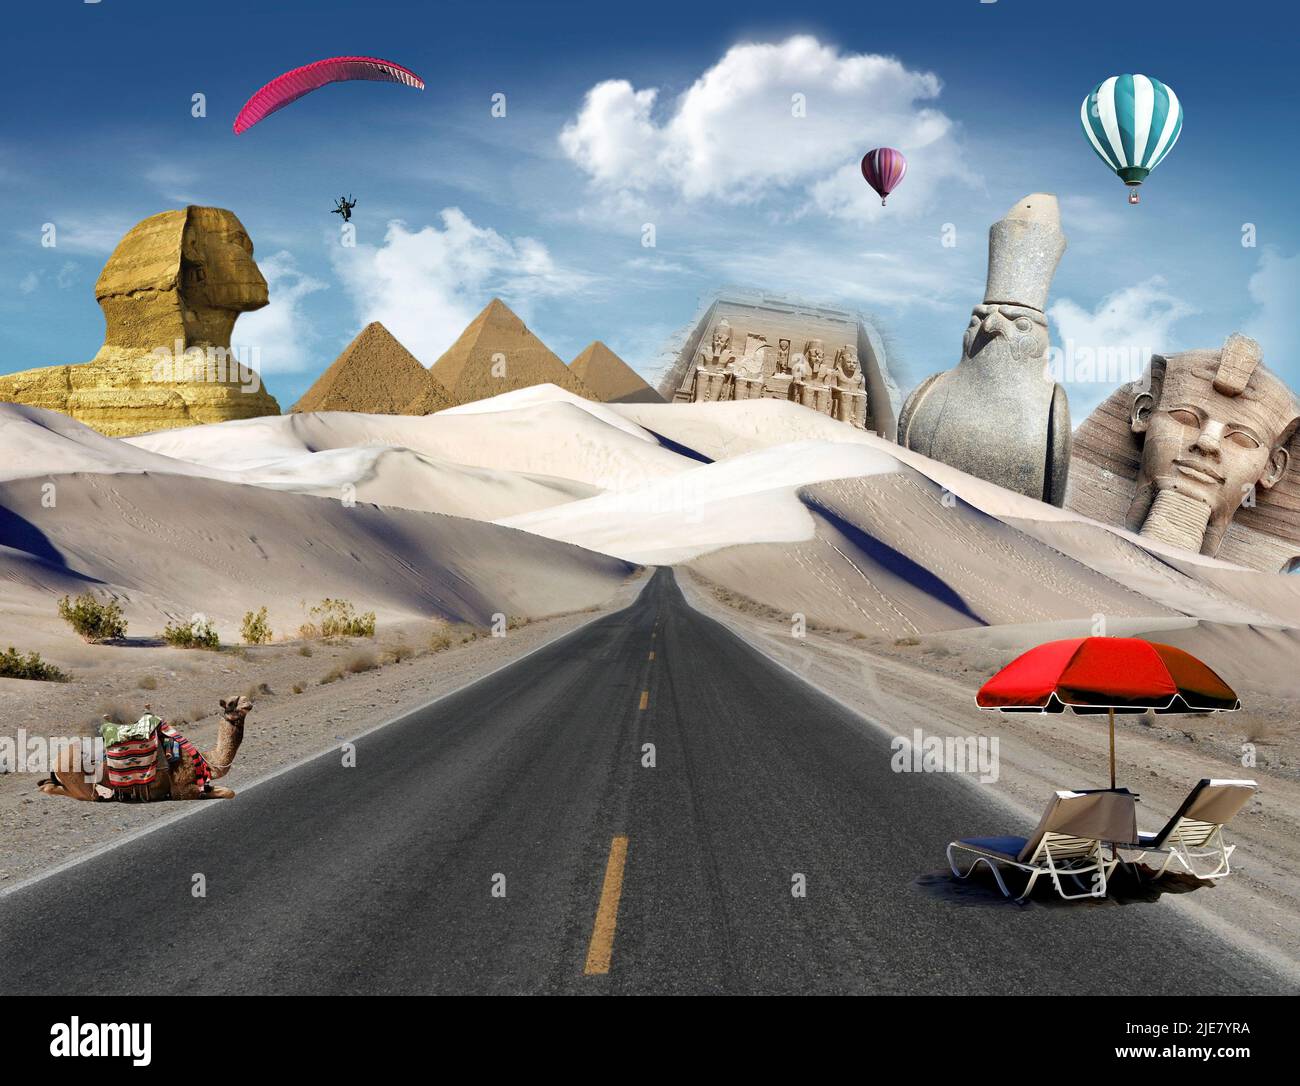 Attrazioni egiziane nel deserto con la strada, cammello e di sedie a sdraio e i palloni ad aria calda e il parapendio vola nel cielo Foto Stock